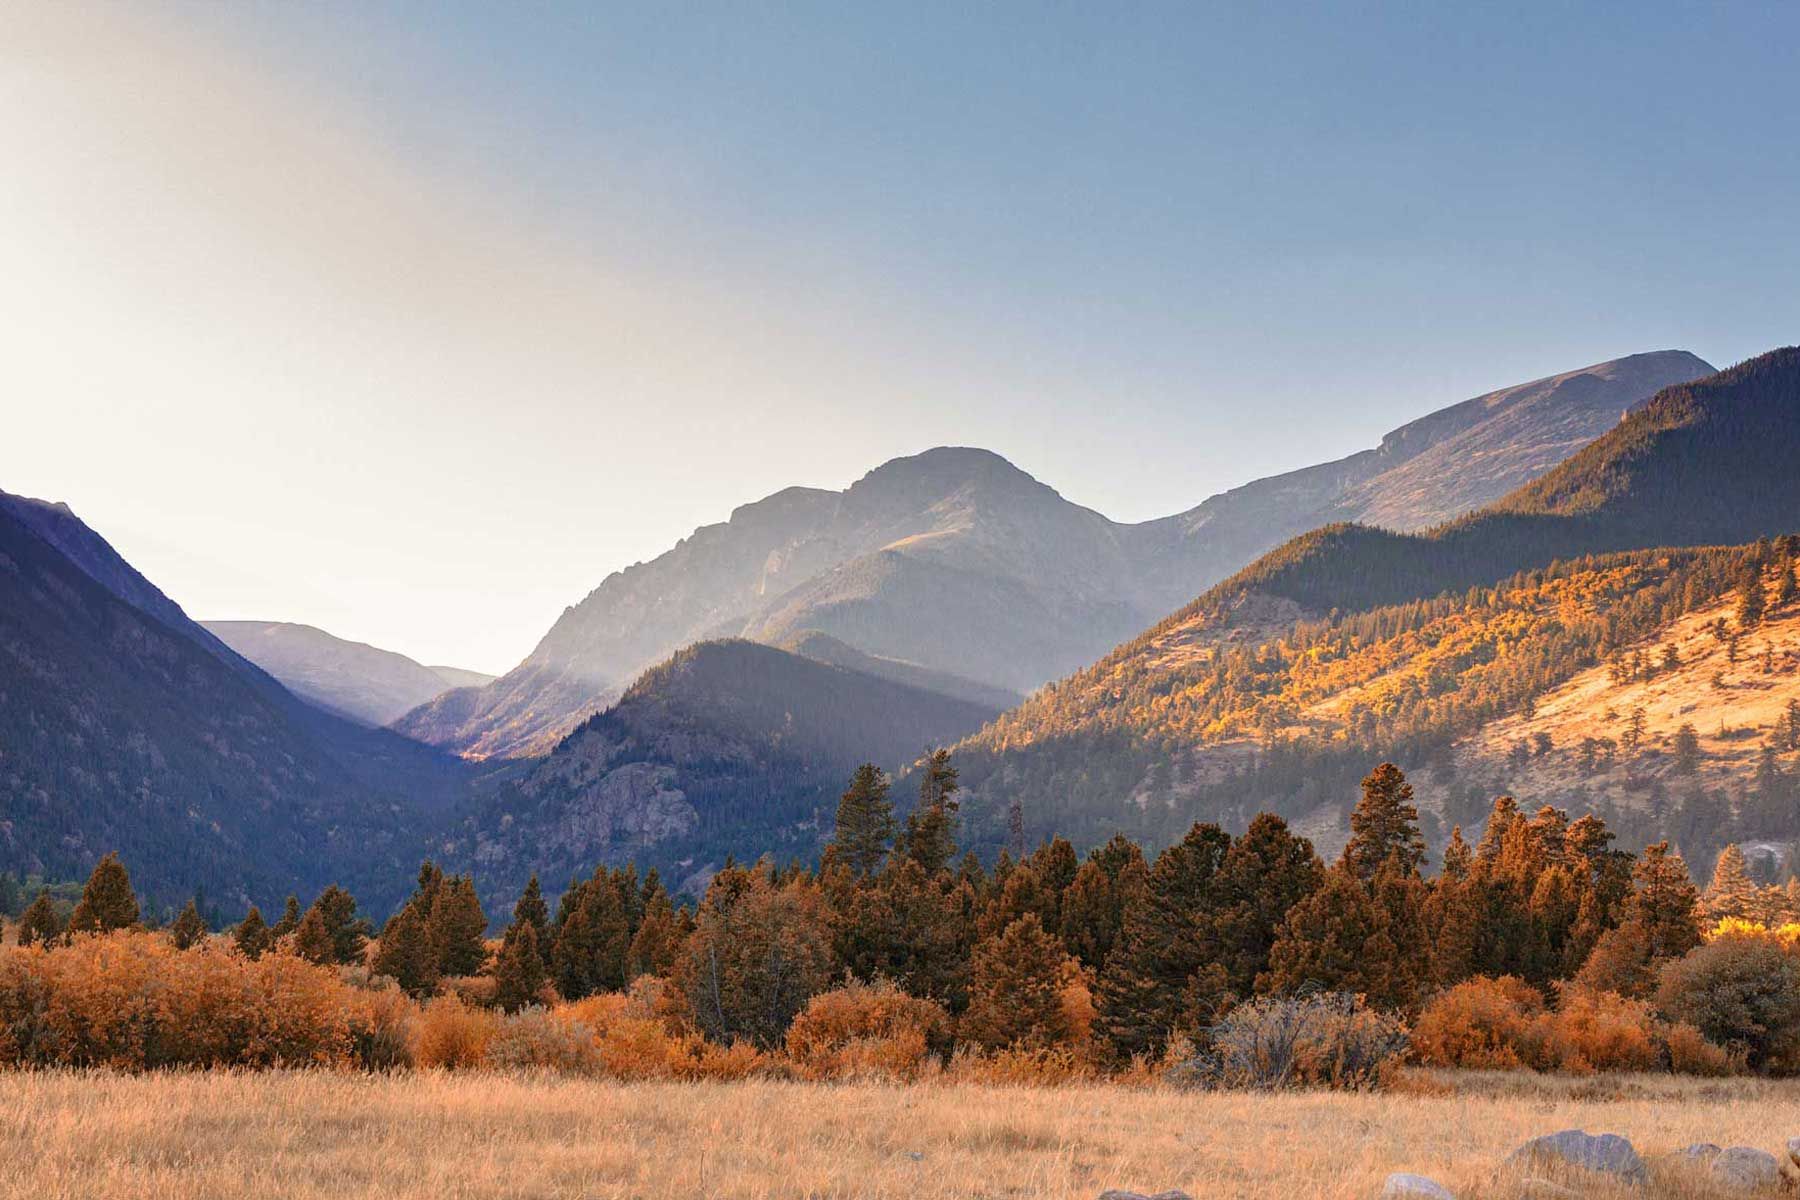 Malerischer Blick auf die Rocky Mountains in Colorado mit warmem Licht